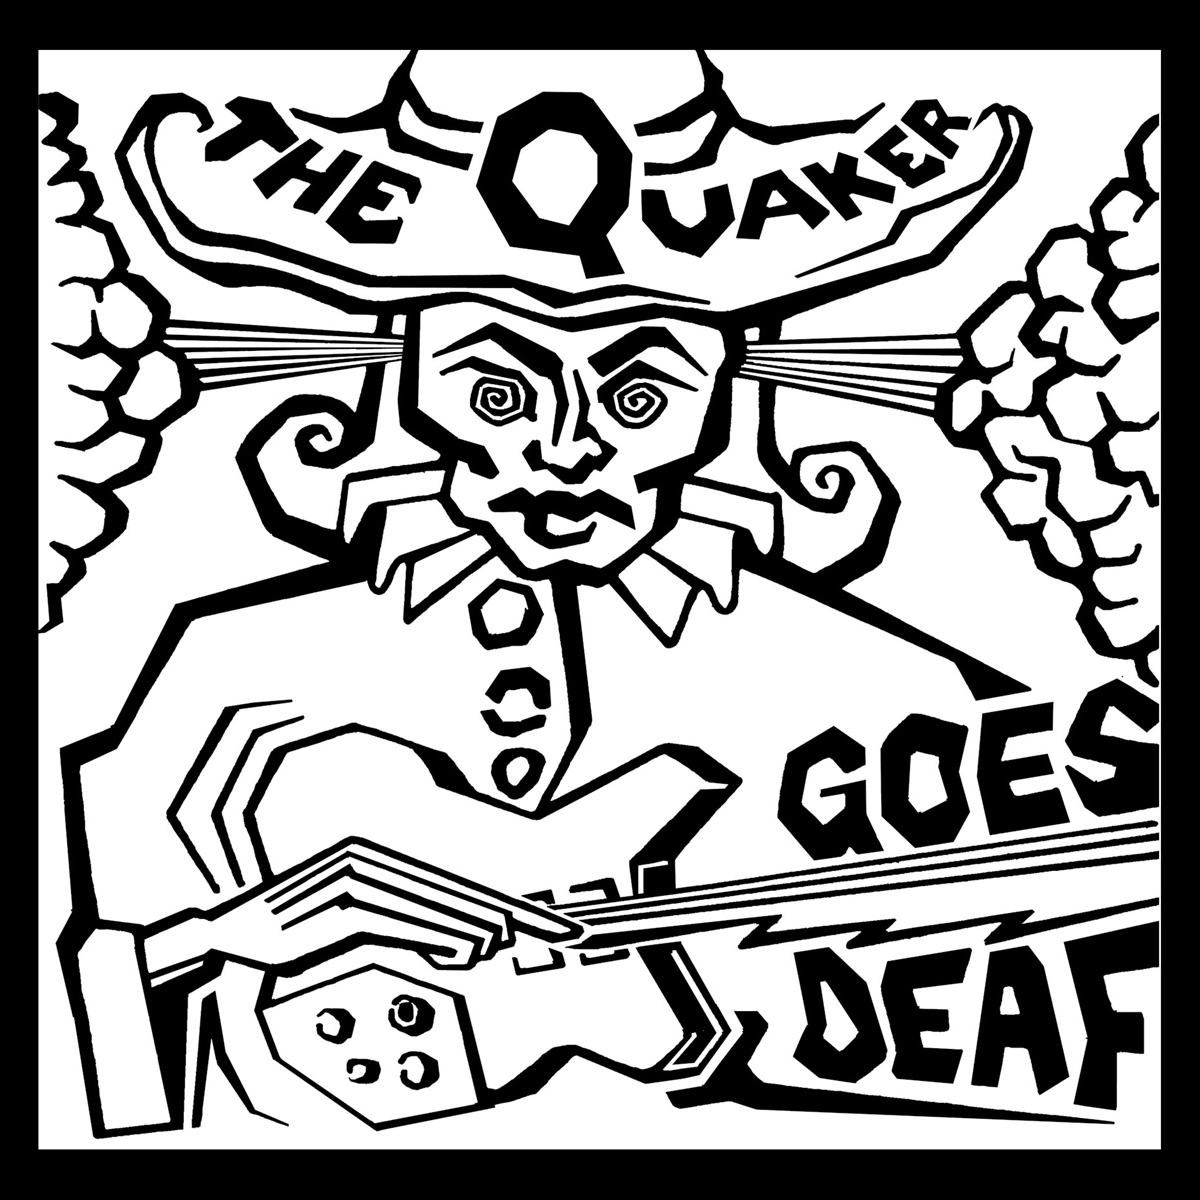 The Quaker Goes Deaf logo